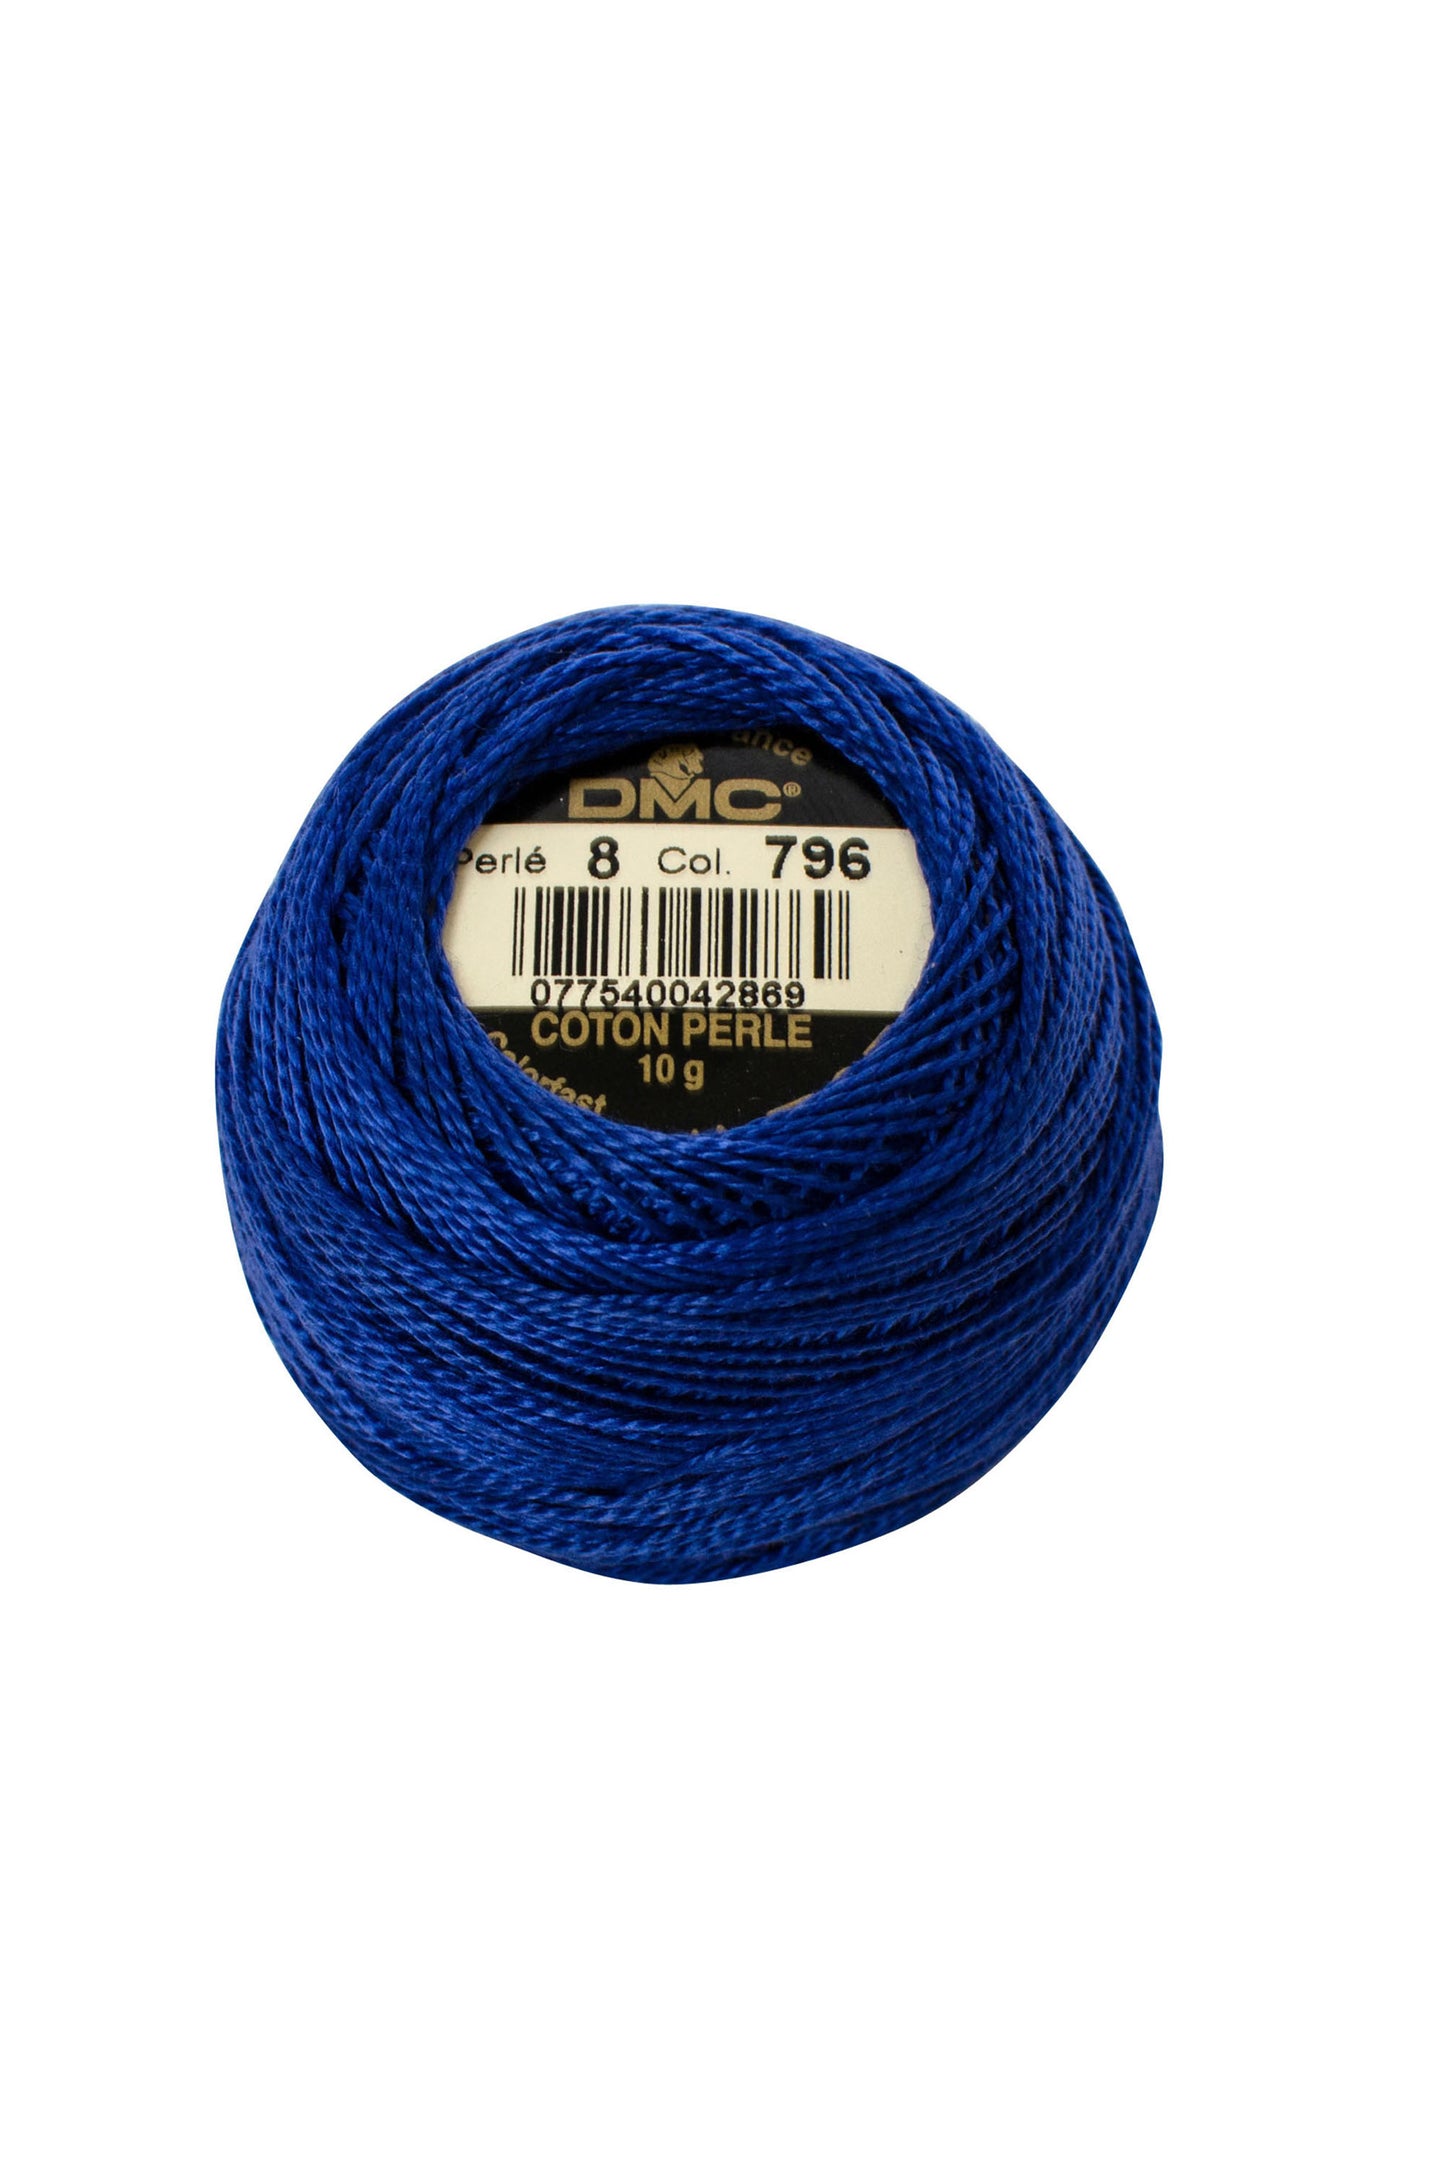 796 Dark Royal Blue - DMC #8 Perle Cotton Ball